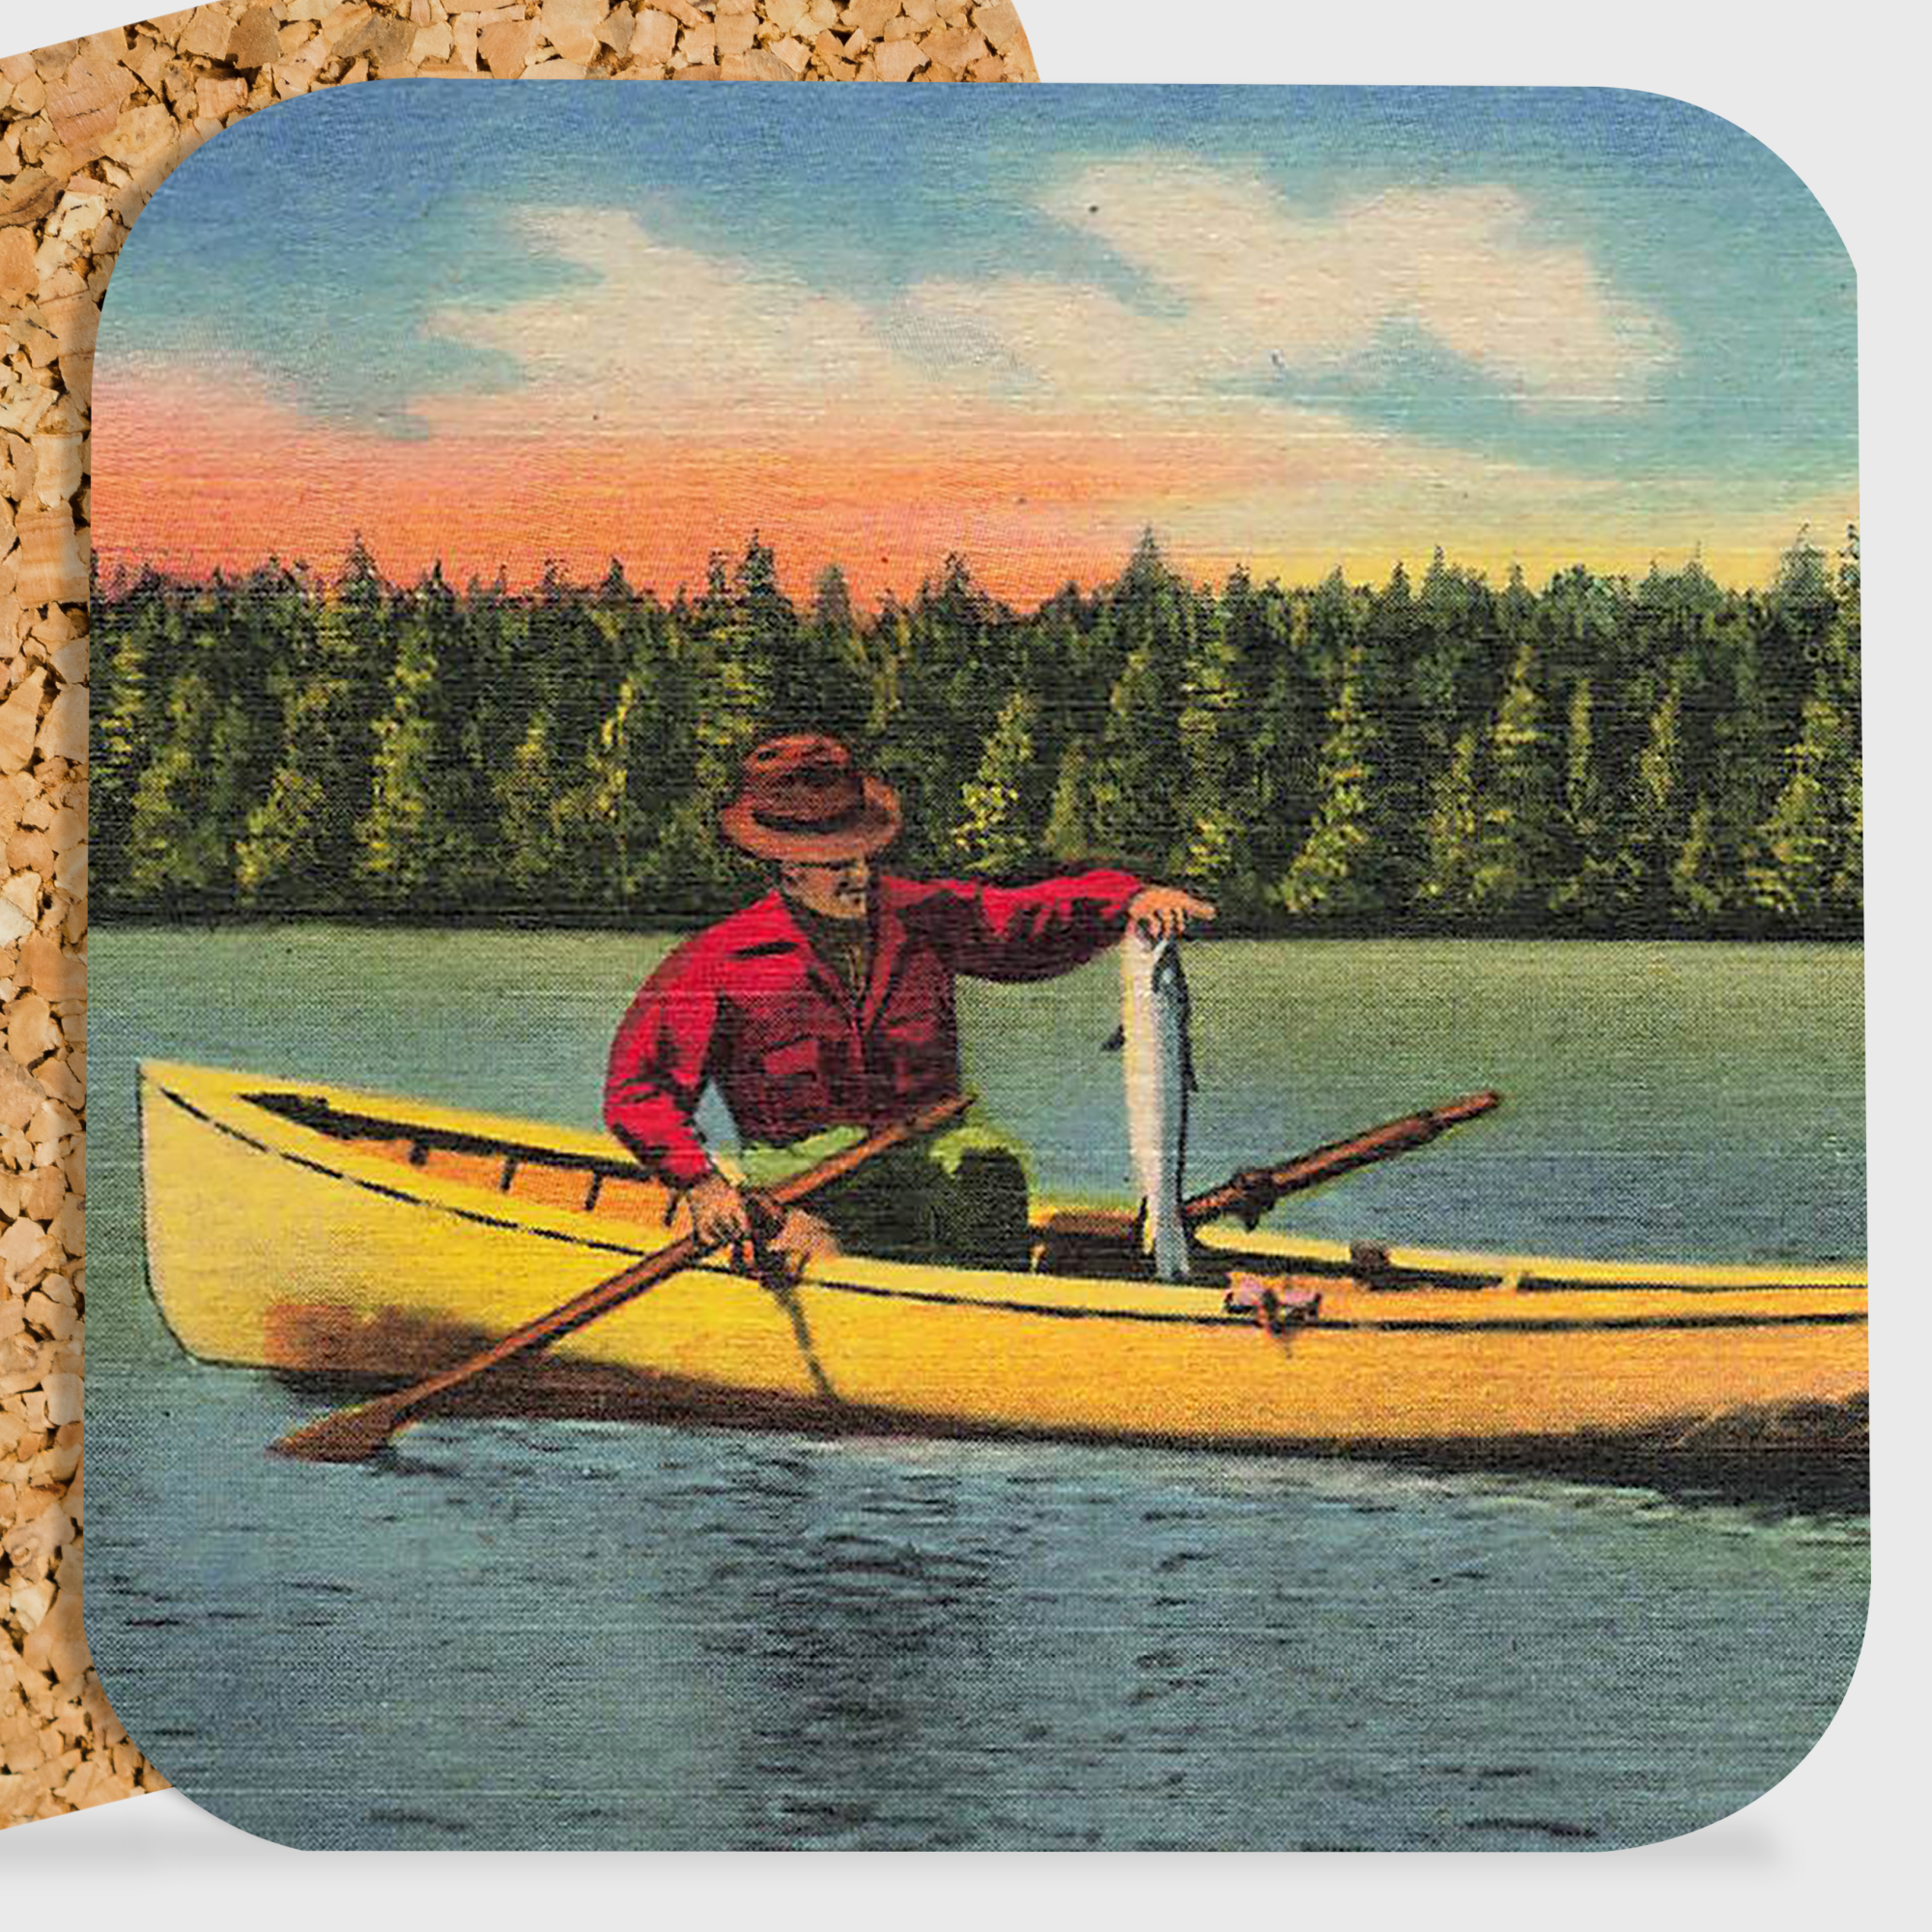 COASTER. Vintage Man Fishing On Lake.